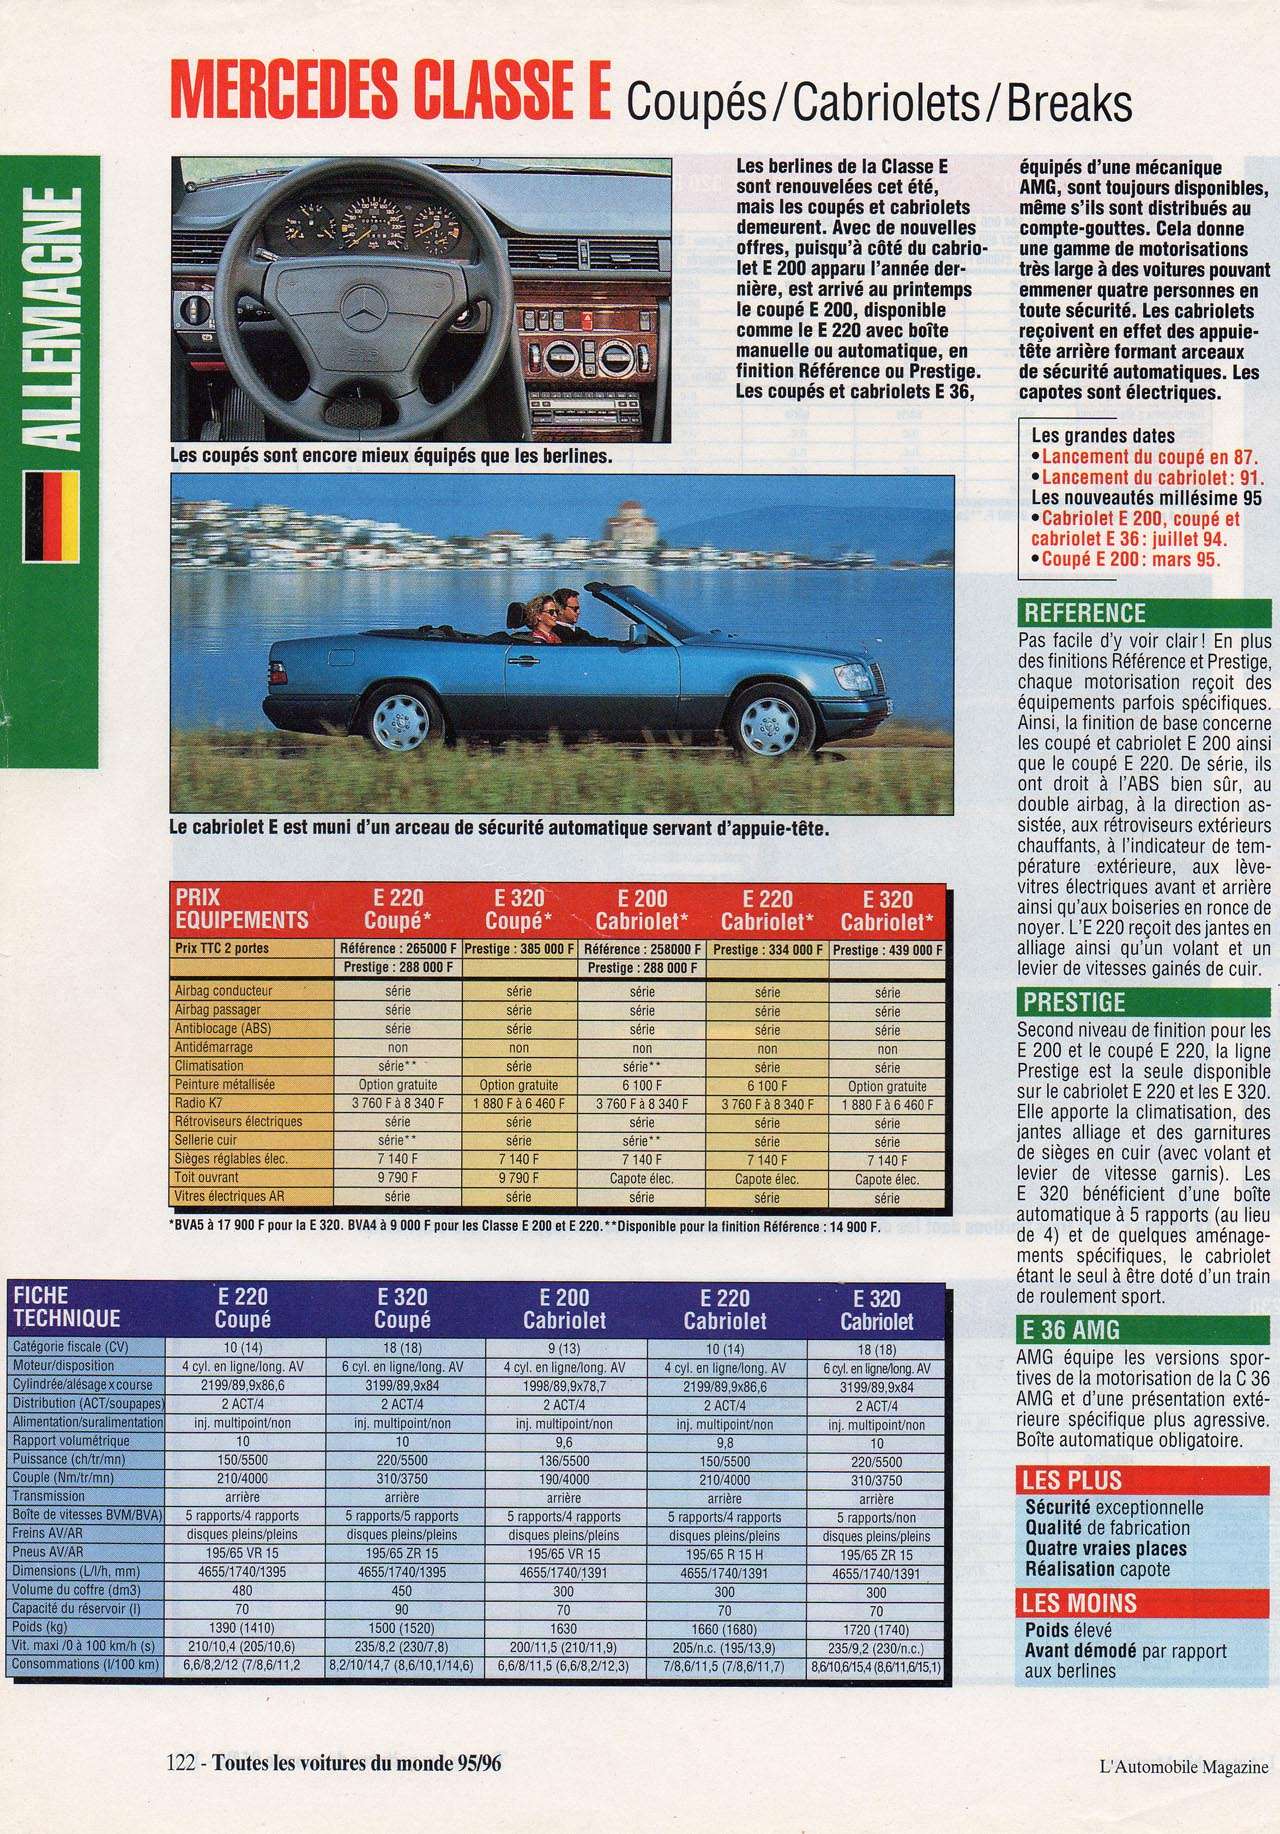 [Doc] Automobile Magazine 95/96 (C/A/S124) Automag95-96p122_a124-c124